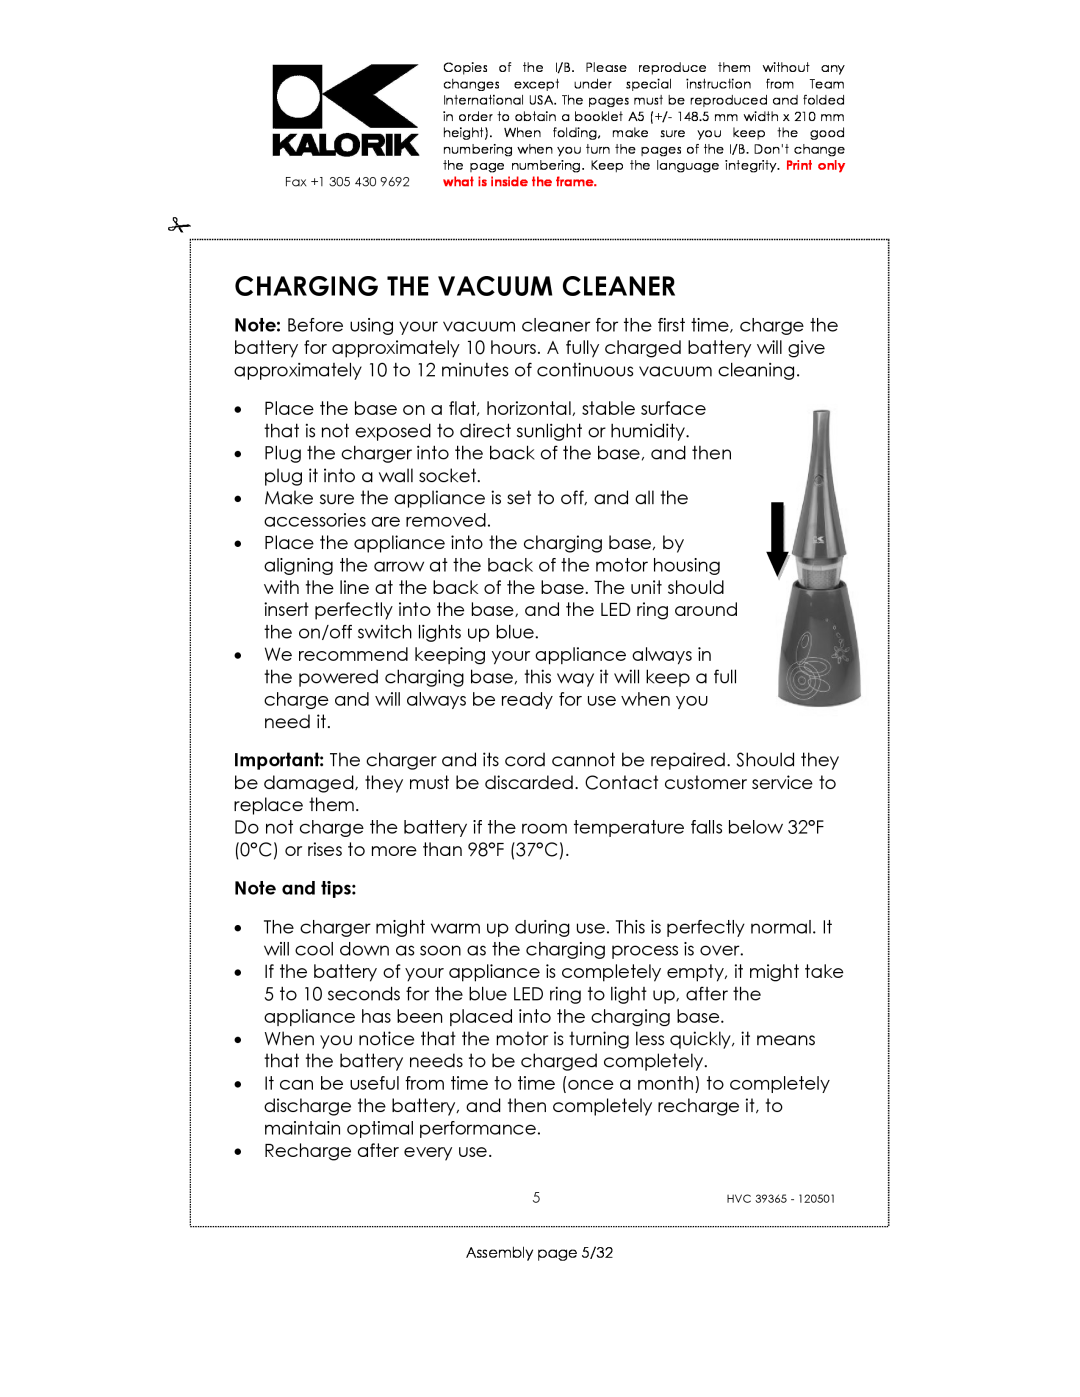 Kalorik HVC 39365 manual Charging The Vacuum Cleaner, Note and tips 